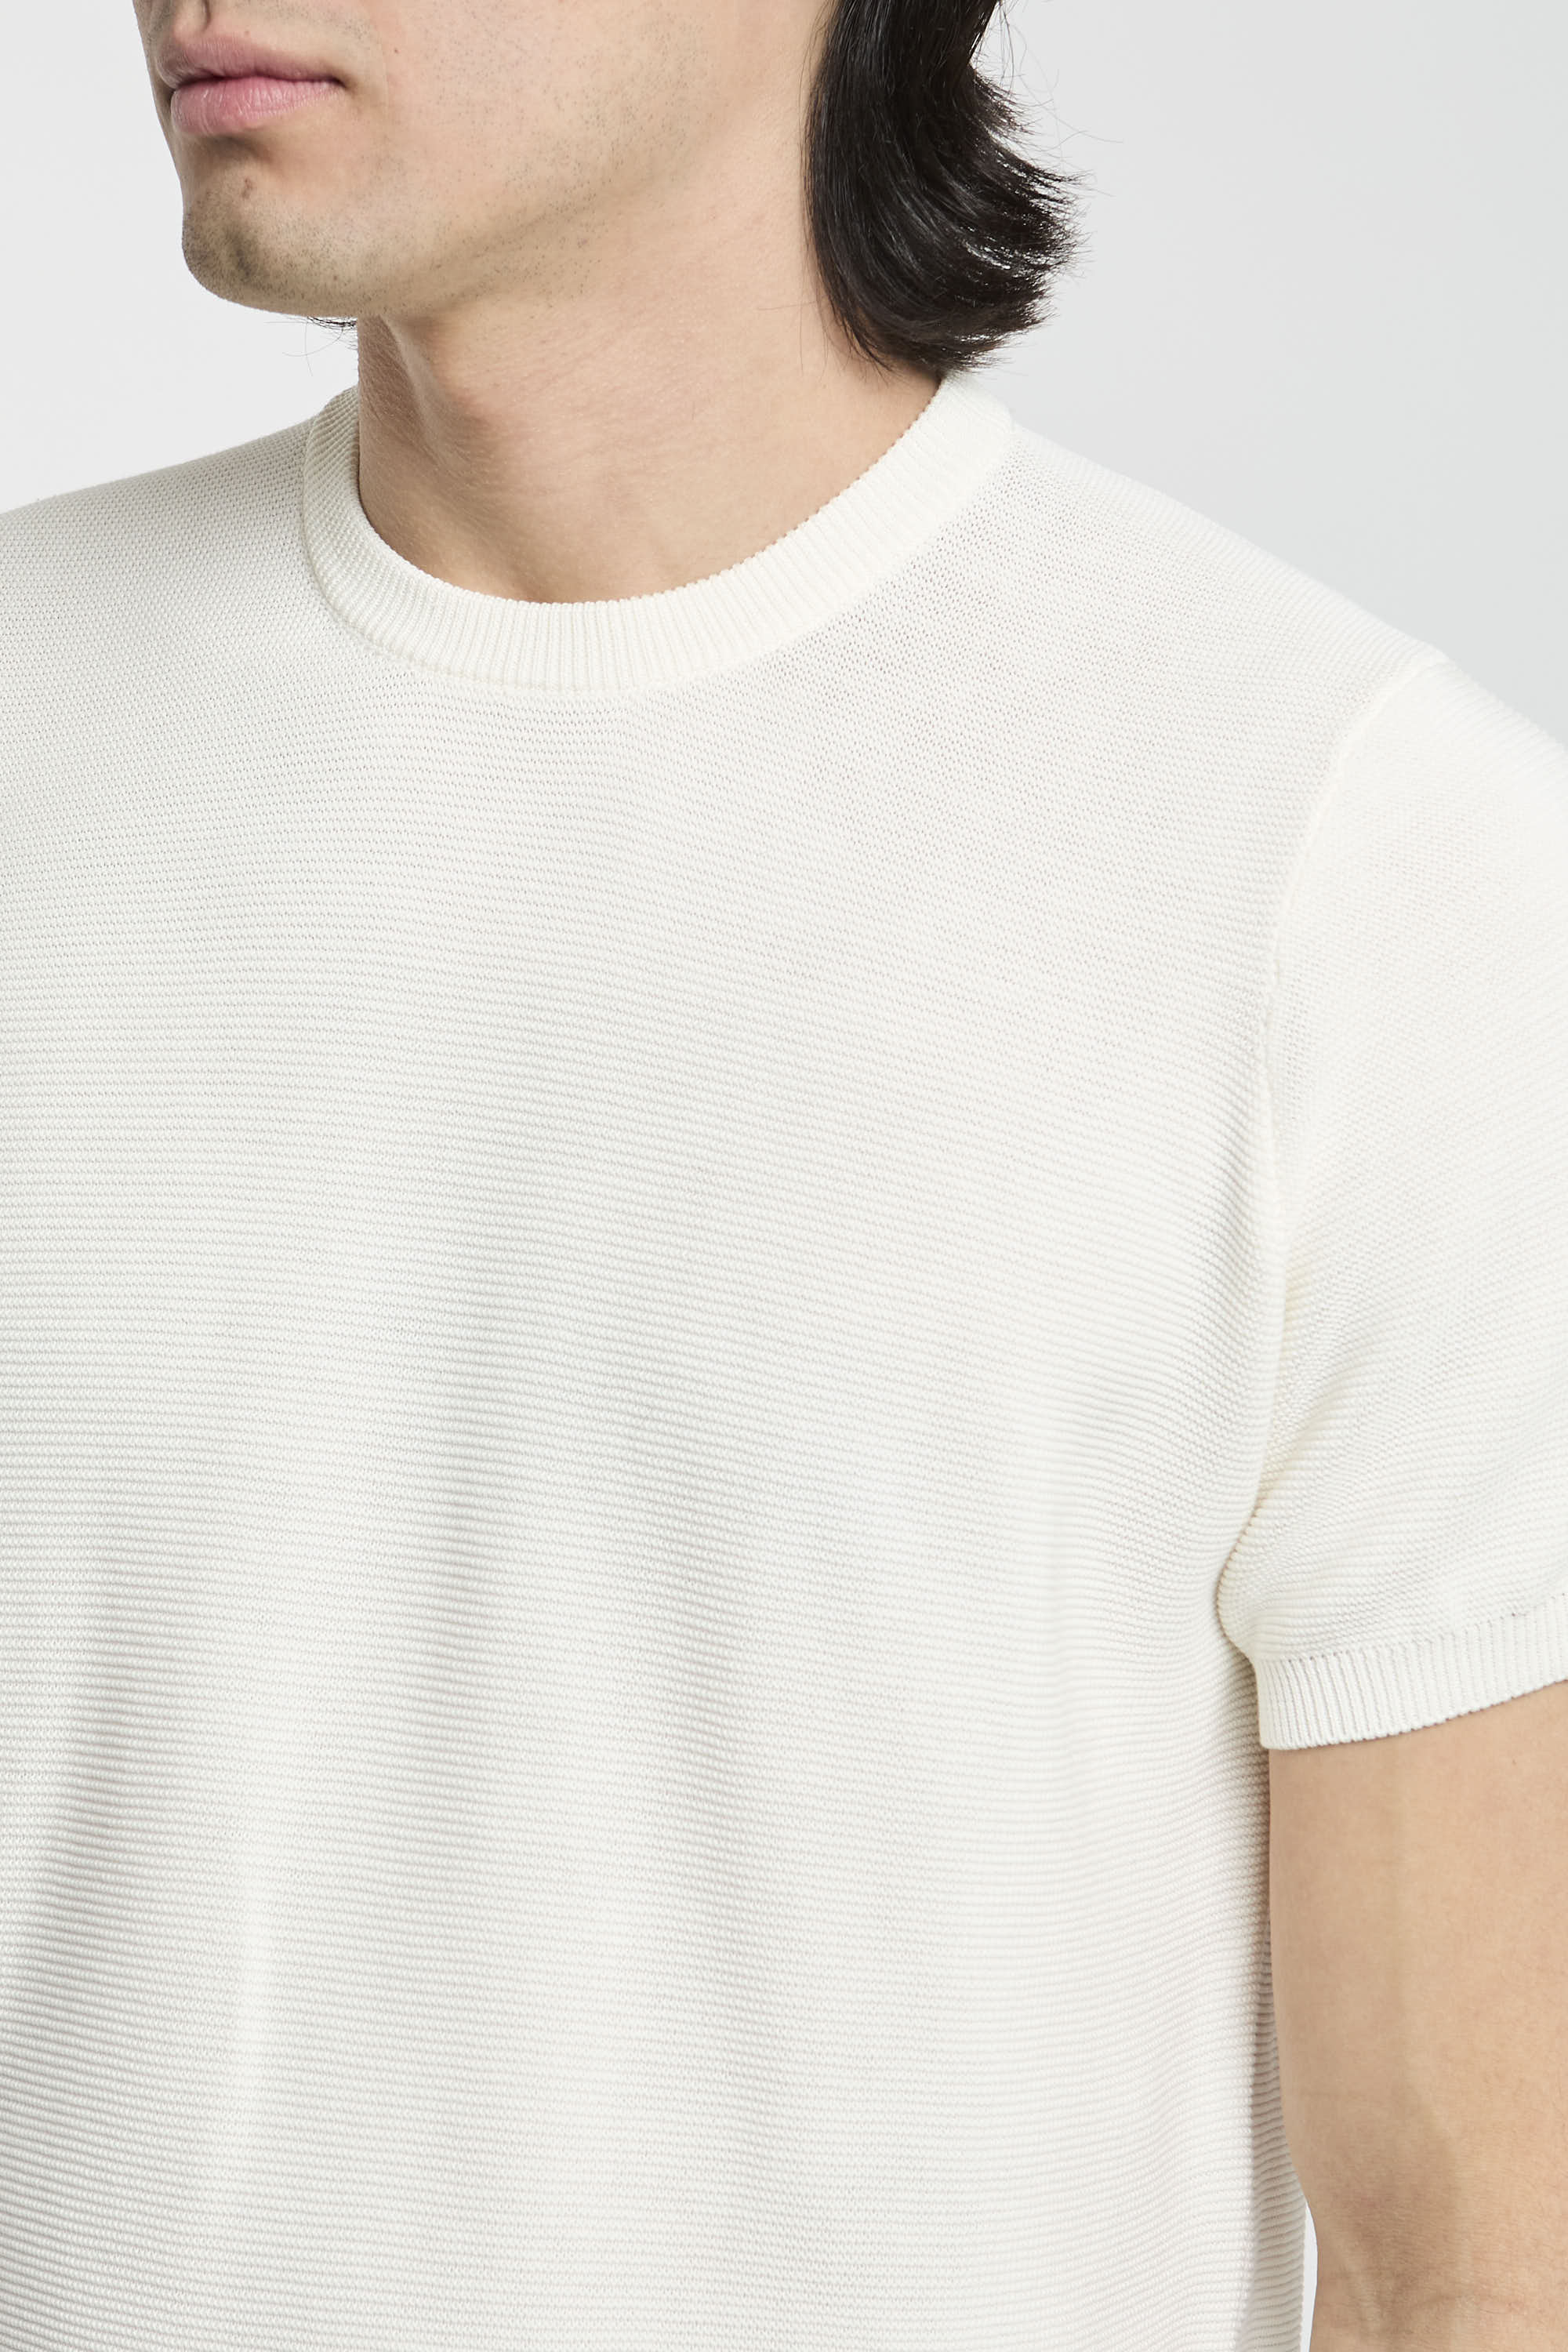 Drumohr Cotton T-shirt White-4